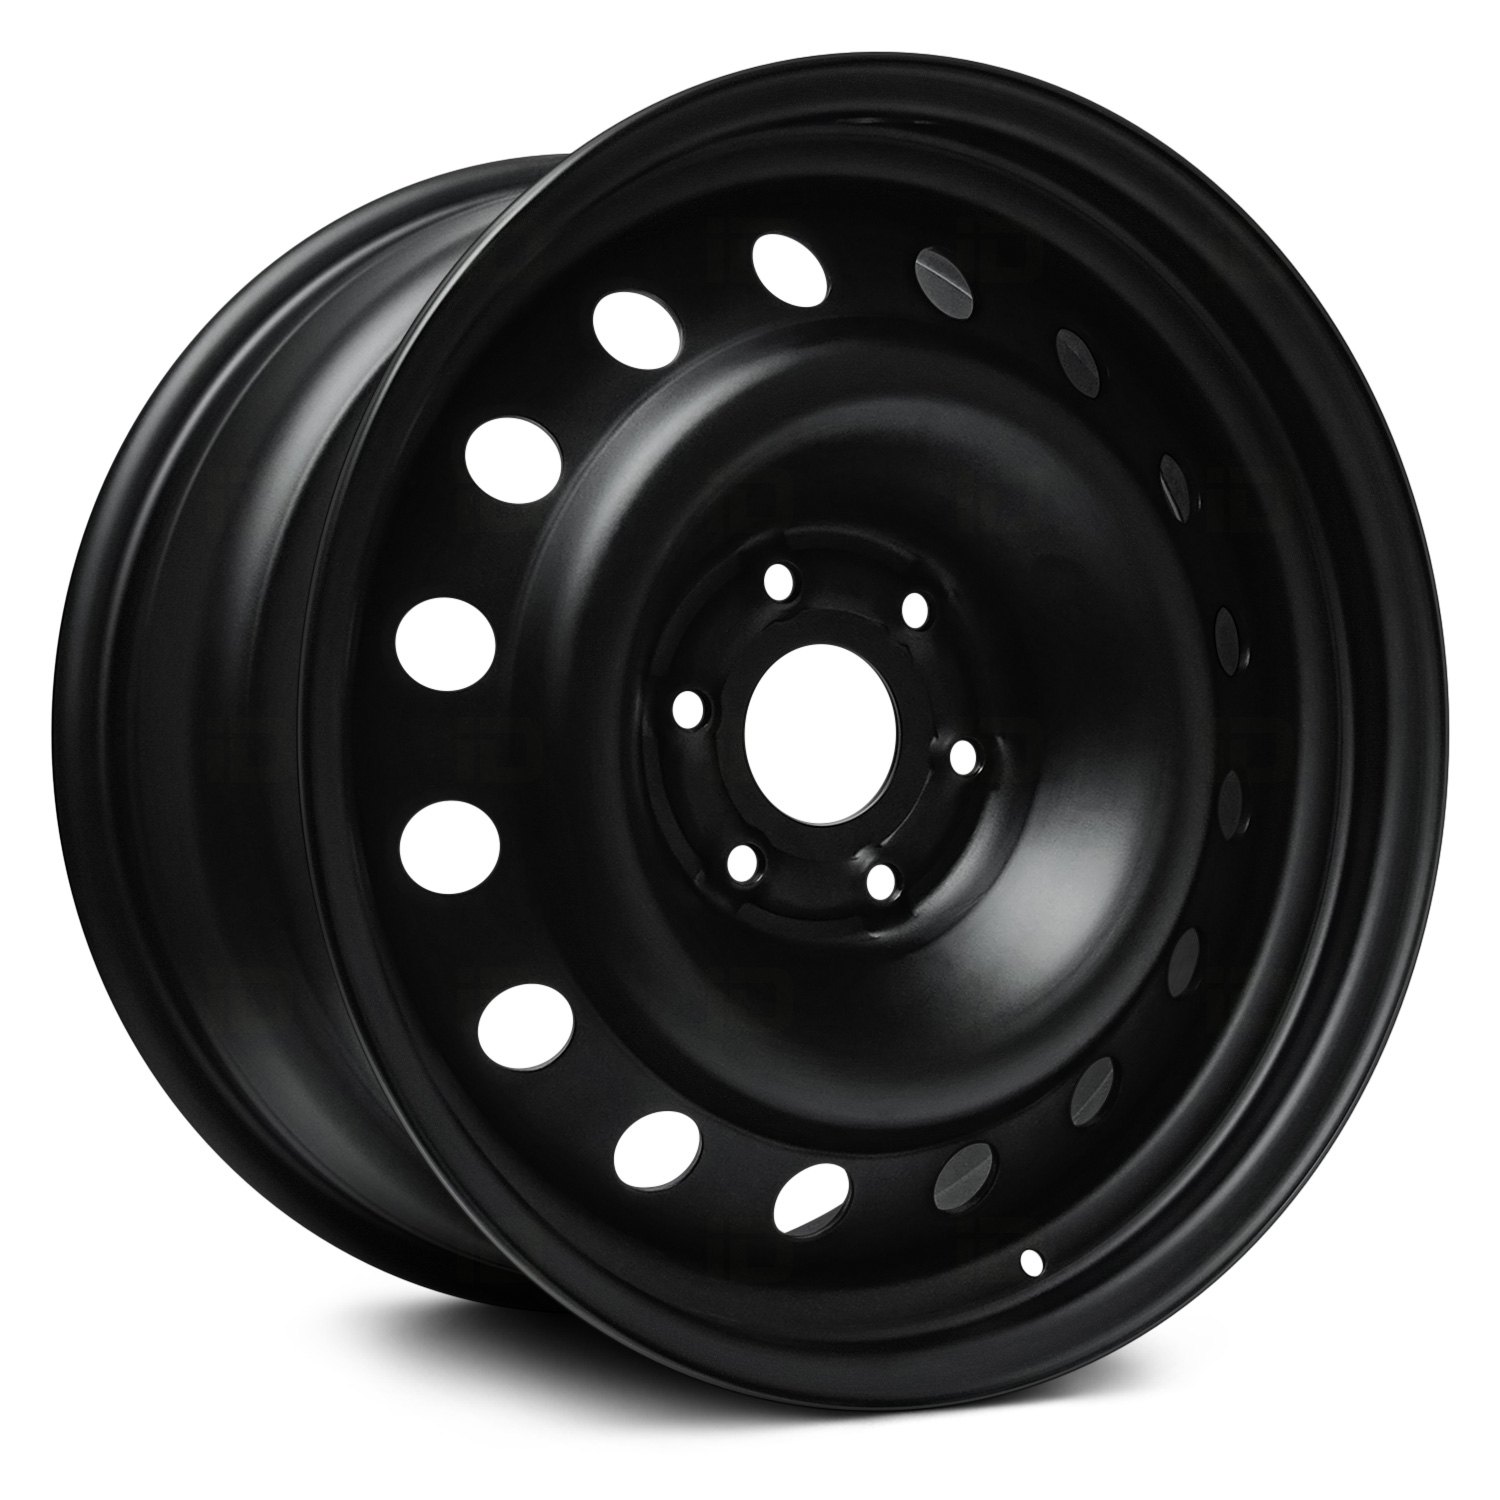 Black steel wheels - hetystorage